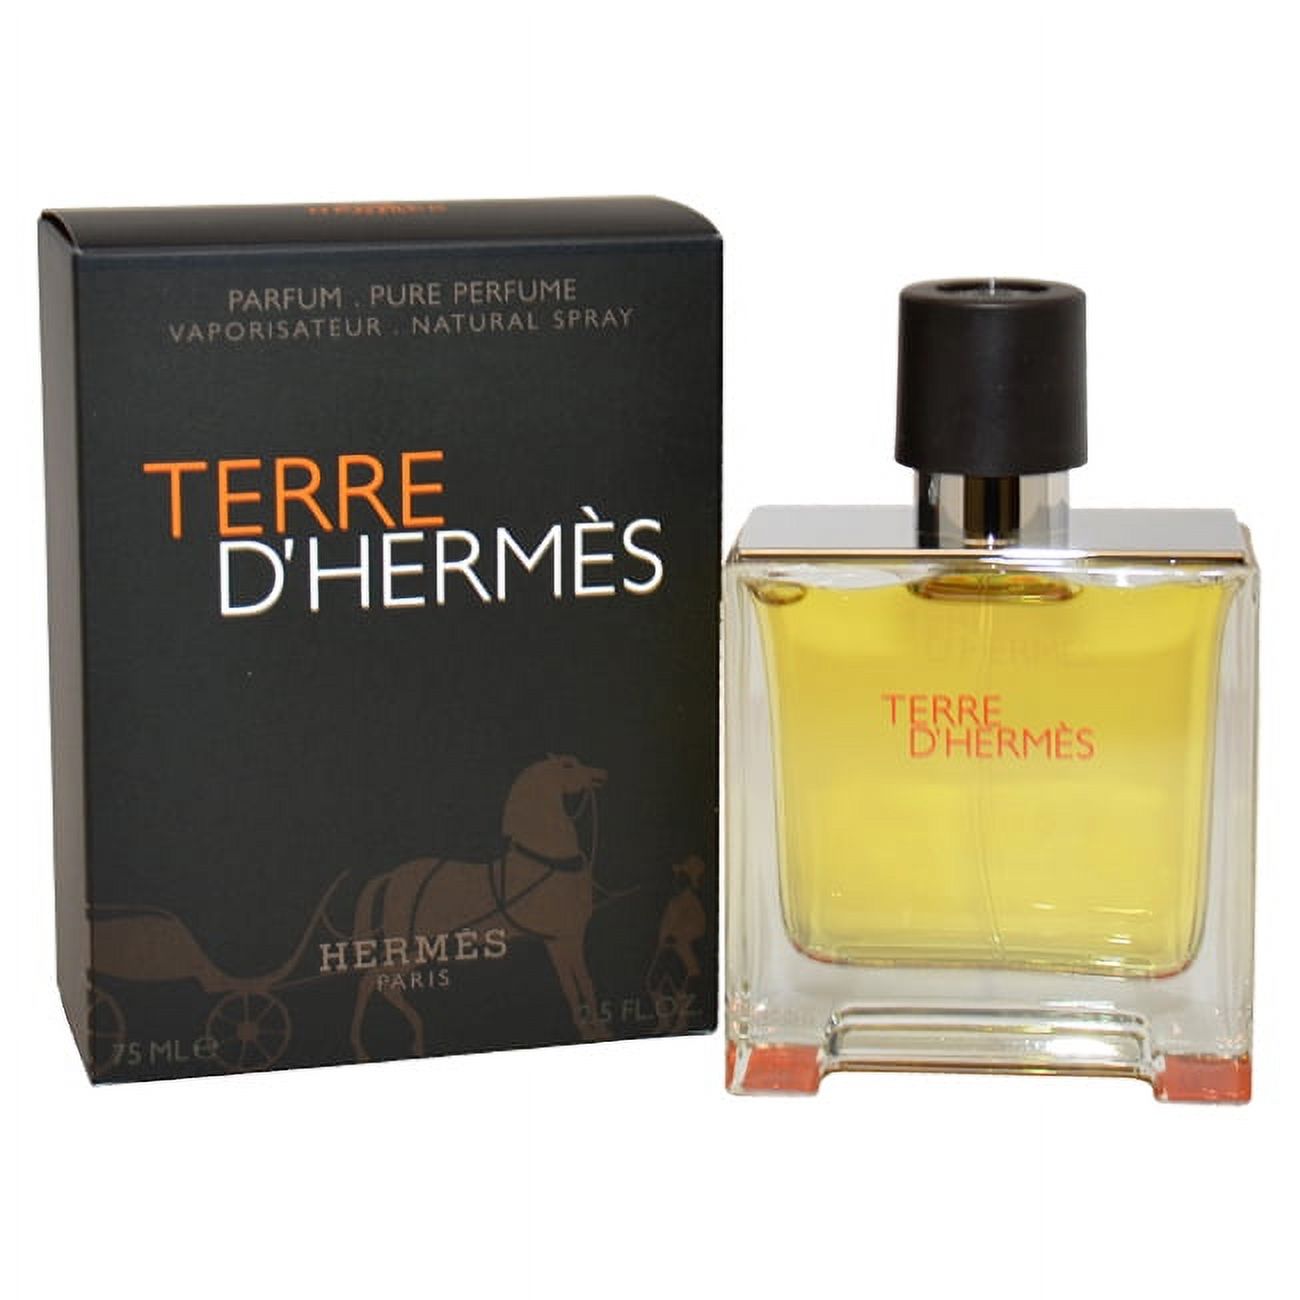 Terre D'Hermes Eau De Parfum Spray, Cologne for Men, 2.5 Oz - image 1 of 3